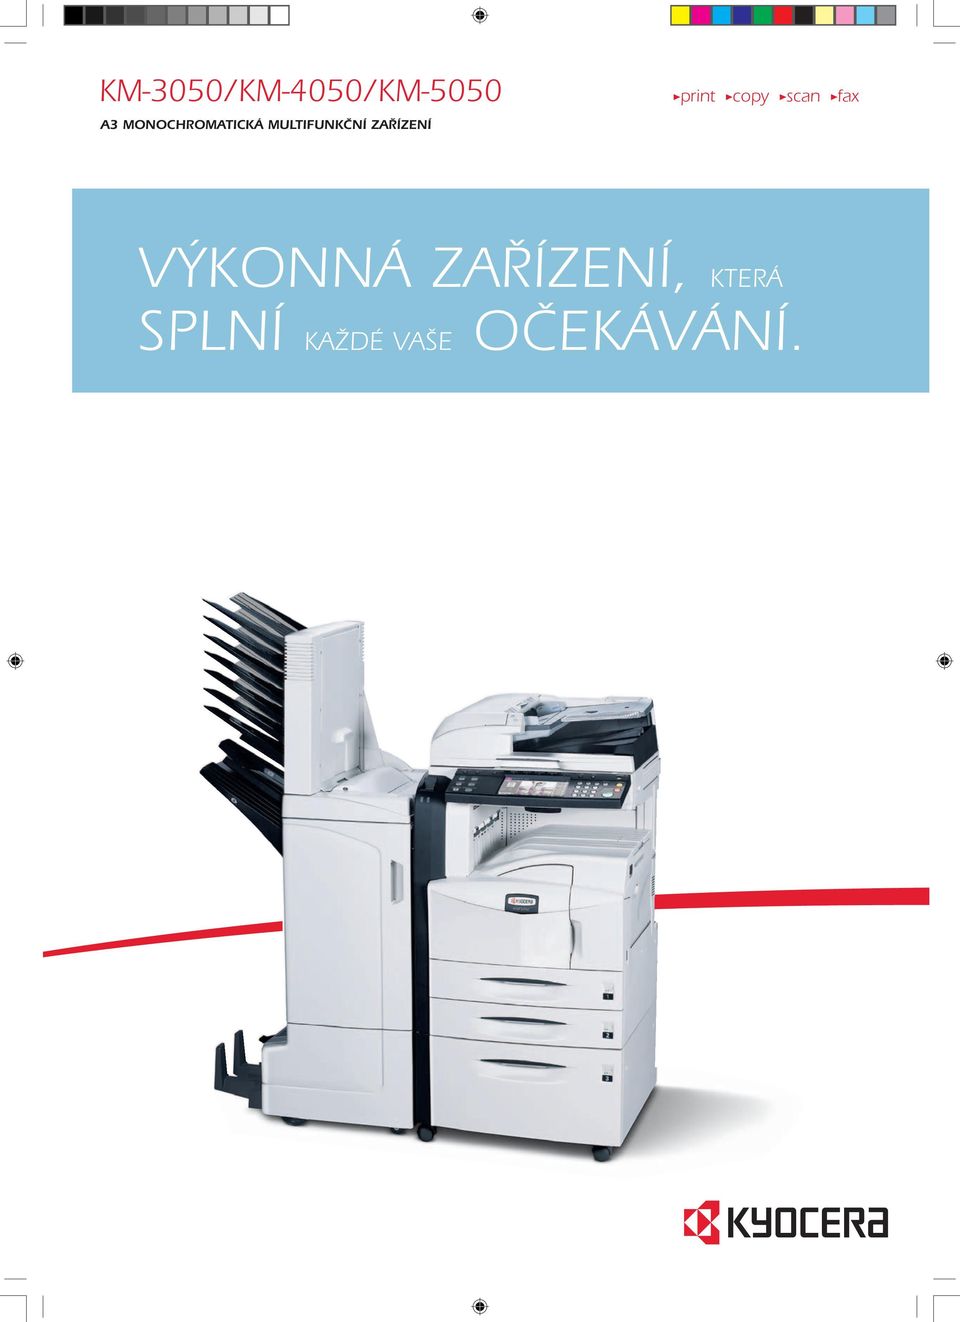 ZAŘÍZENÍ print copy scan fax